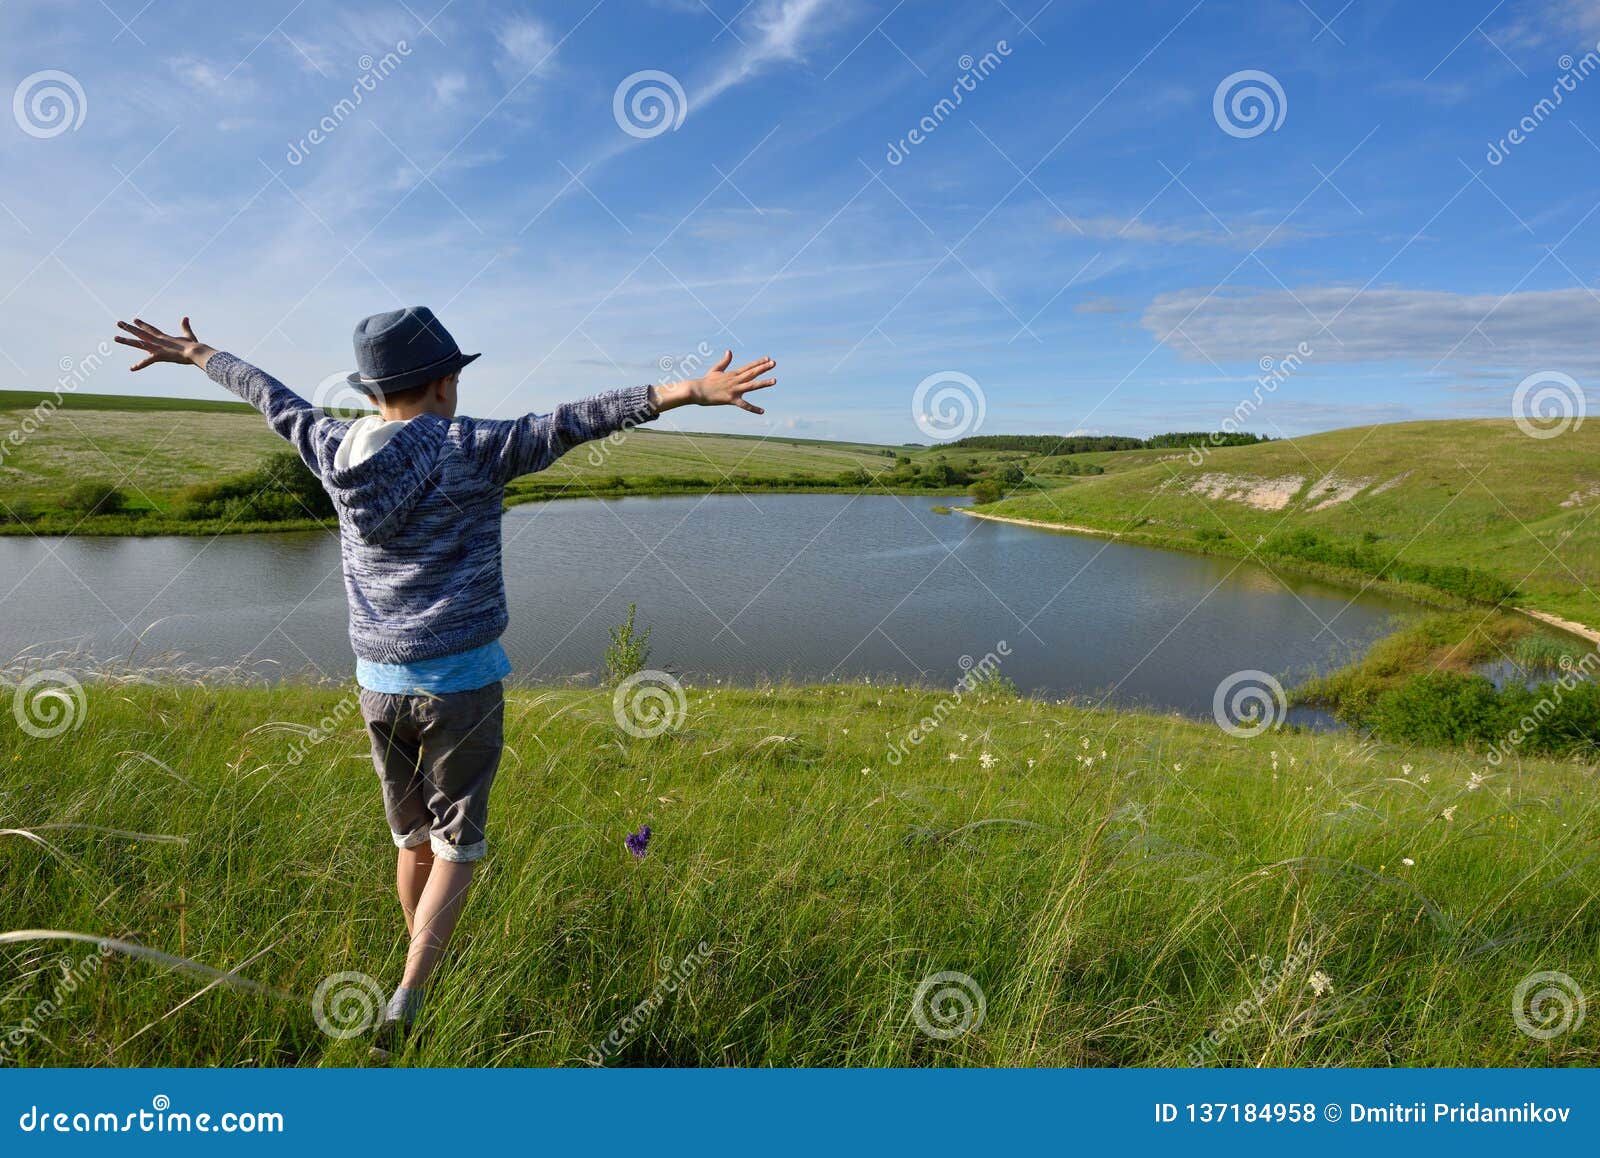 Побегу к реке. Бежит река. Мальчик бежит к реке. Мальчик радостно бежит. Мужчина бежит к реке.